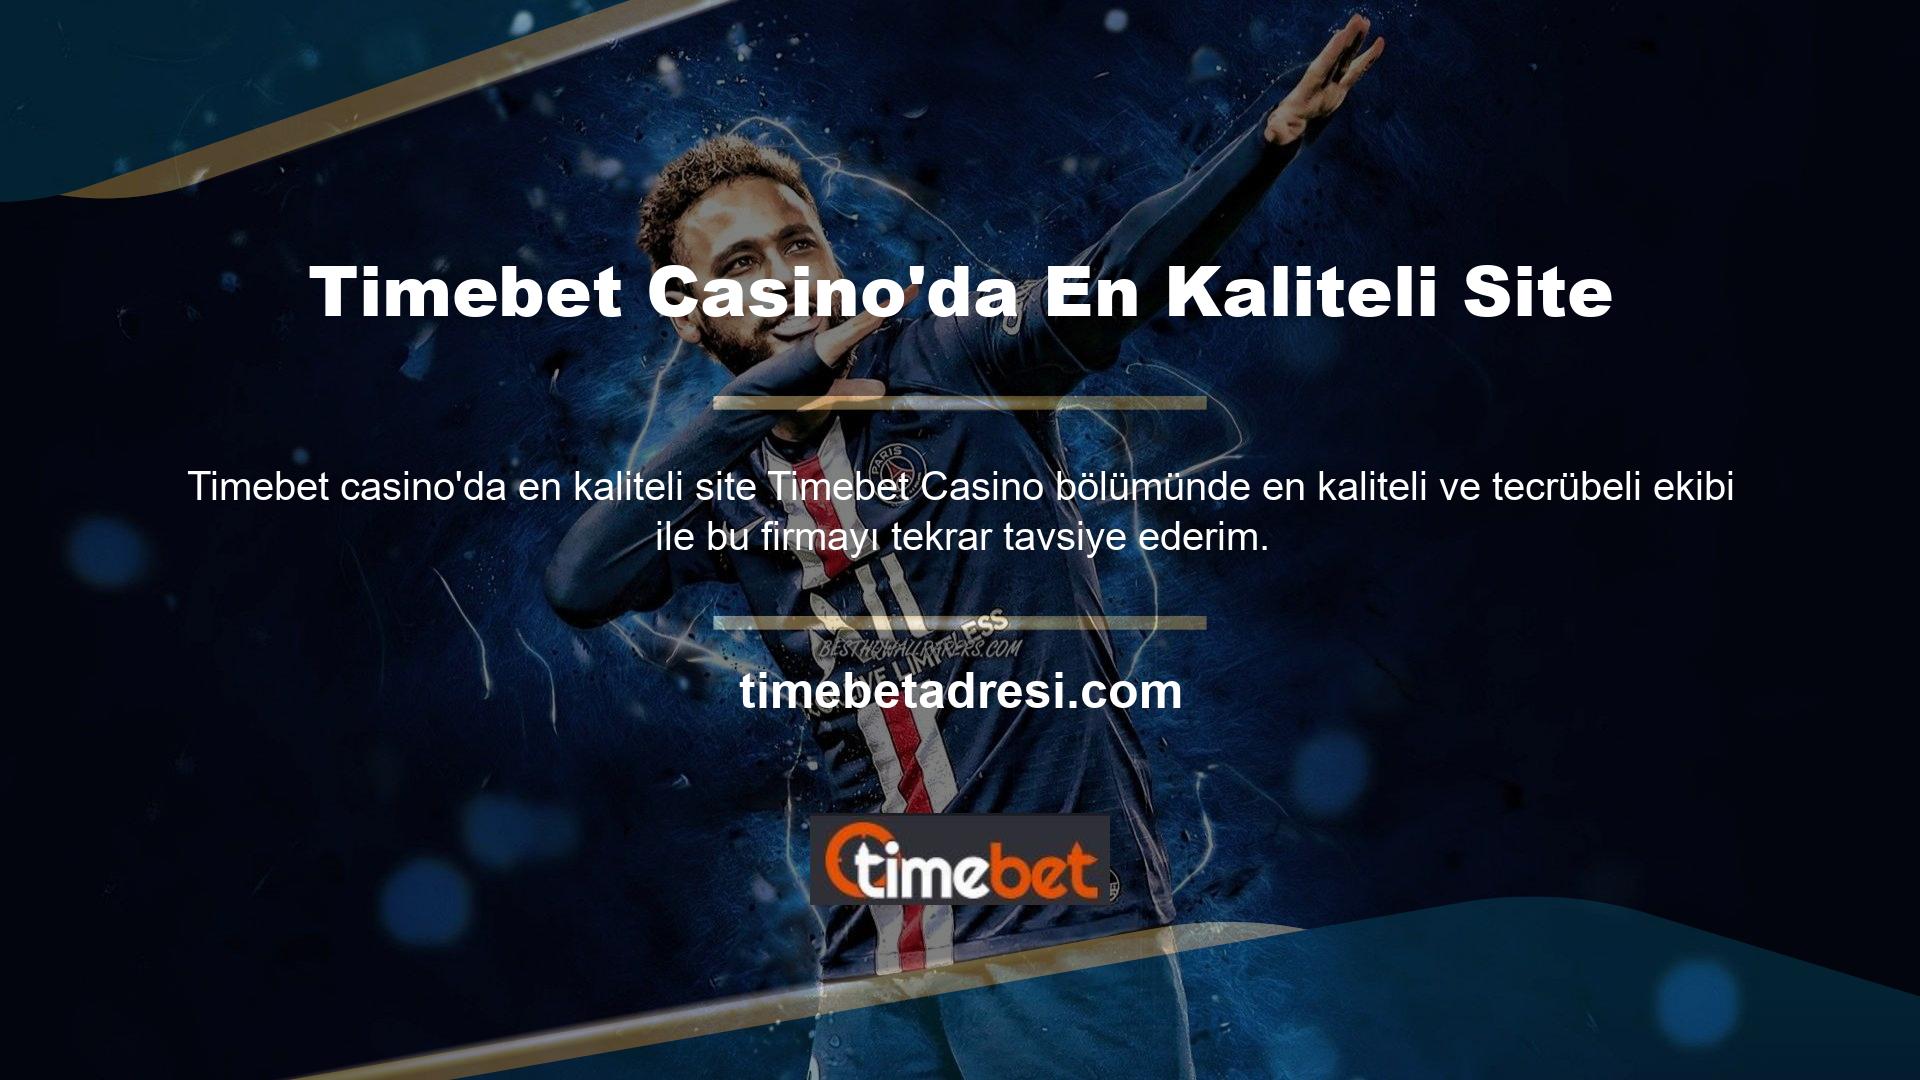 Timebet Casino ile tanıştığınızda gerçeği daha kısa sürede öğreneceksiniz